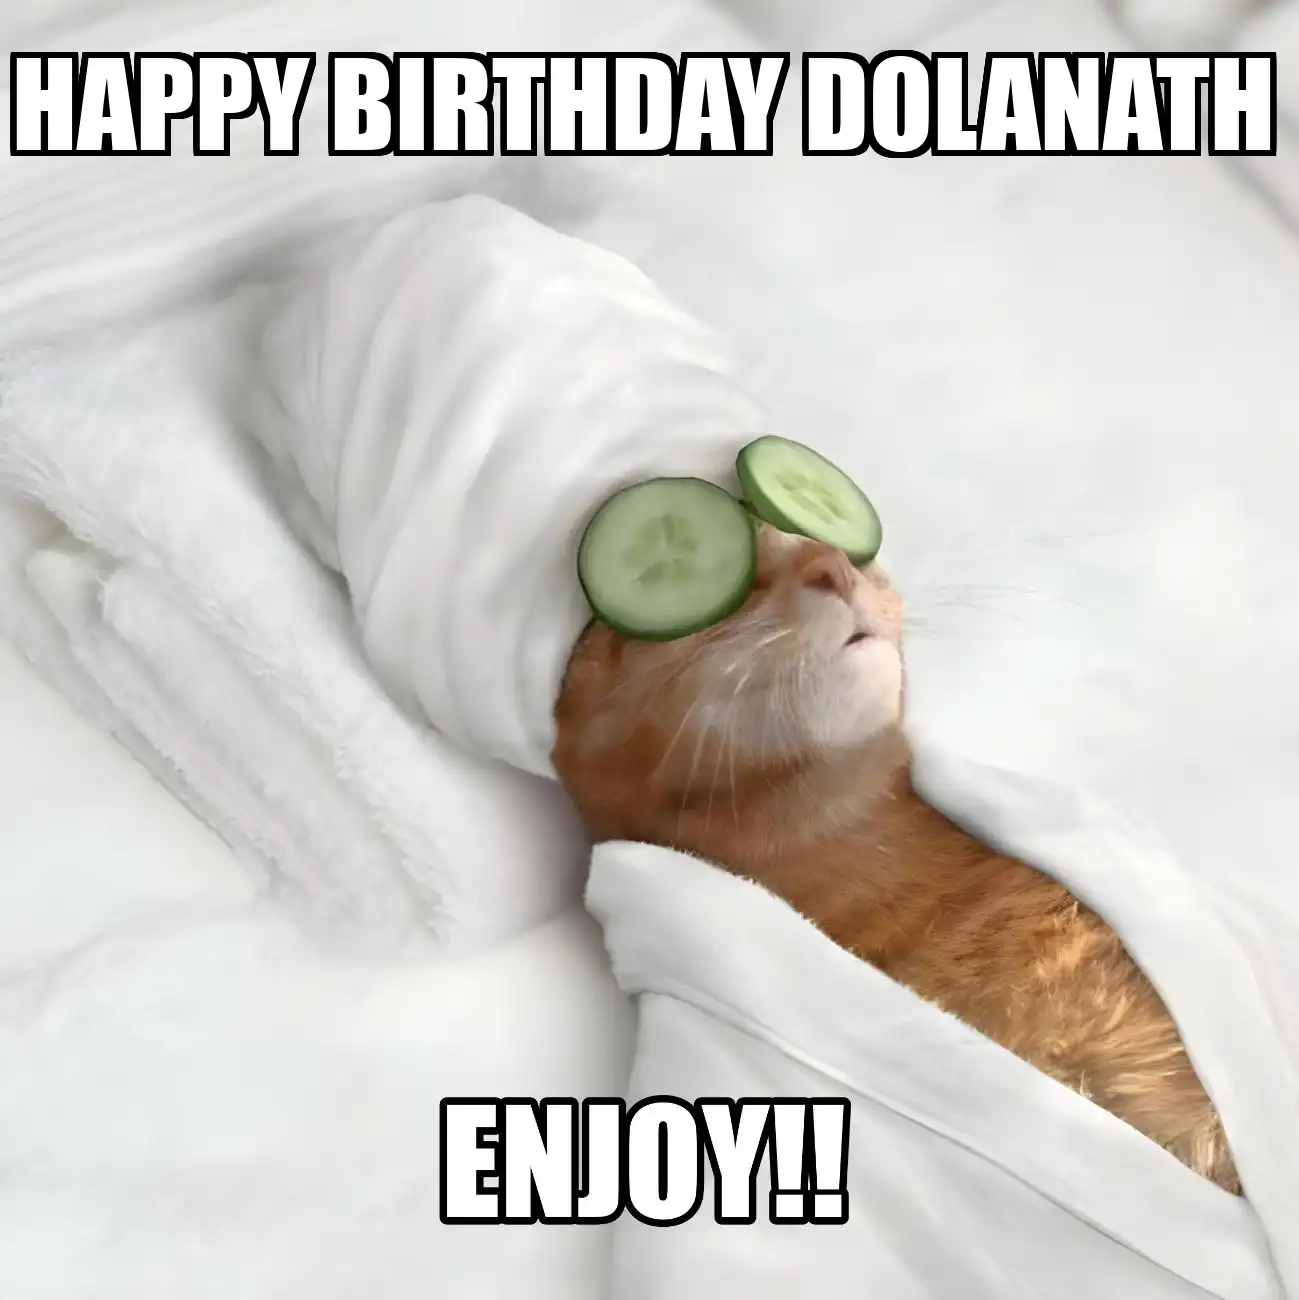 Happy Birthday Dolanath Enjoy Cat Meme